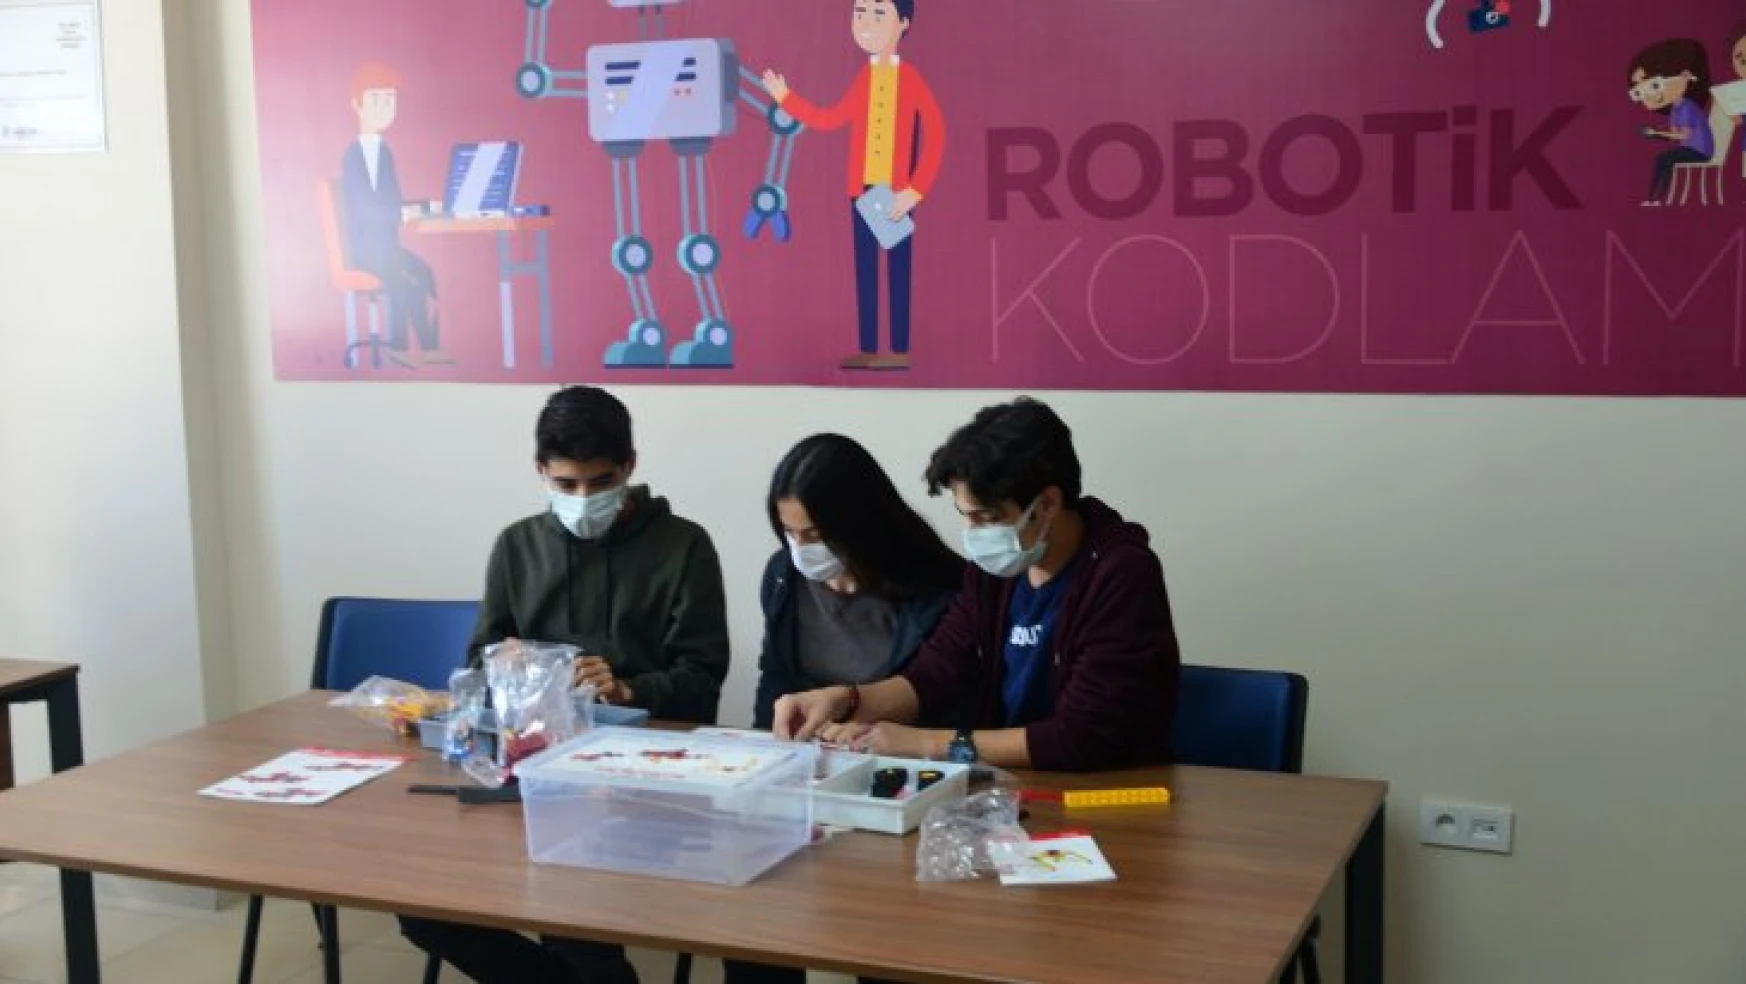 Yeşilyurt Belediyesi, Ücretsiz Robotik Kodlama Ve Arduino Temel Seviye Eğitim Kursu Açıyor